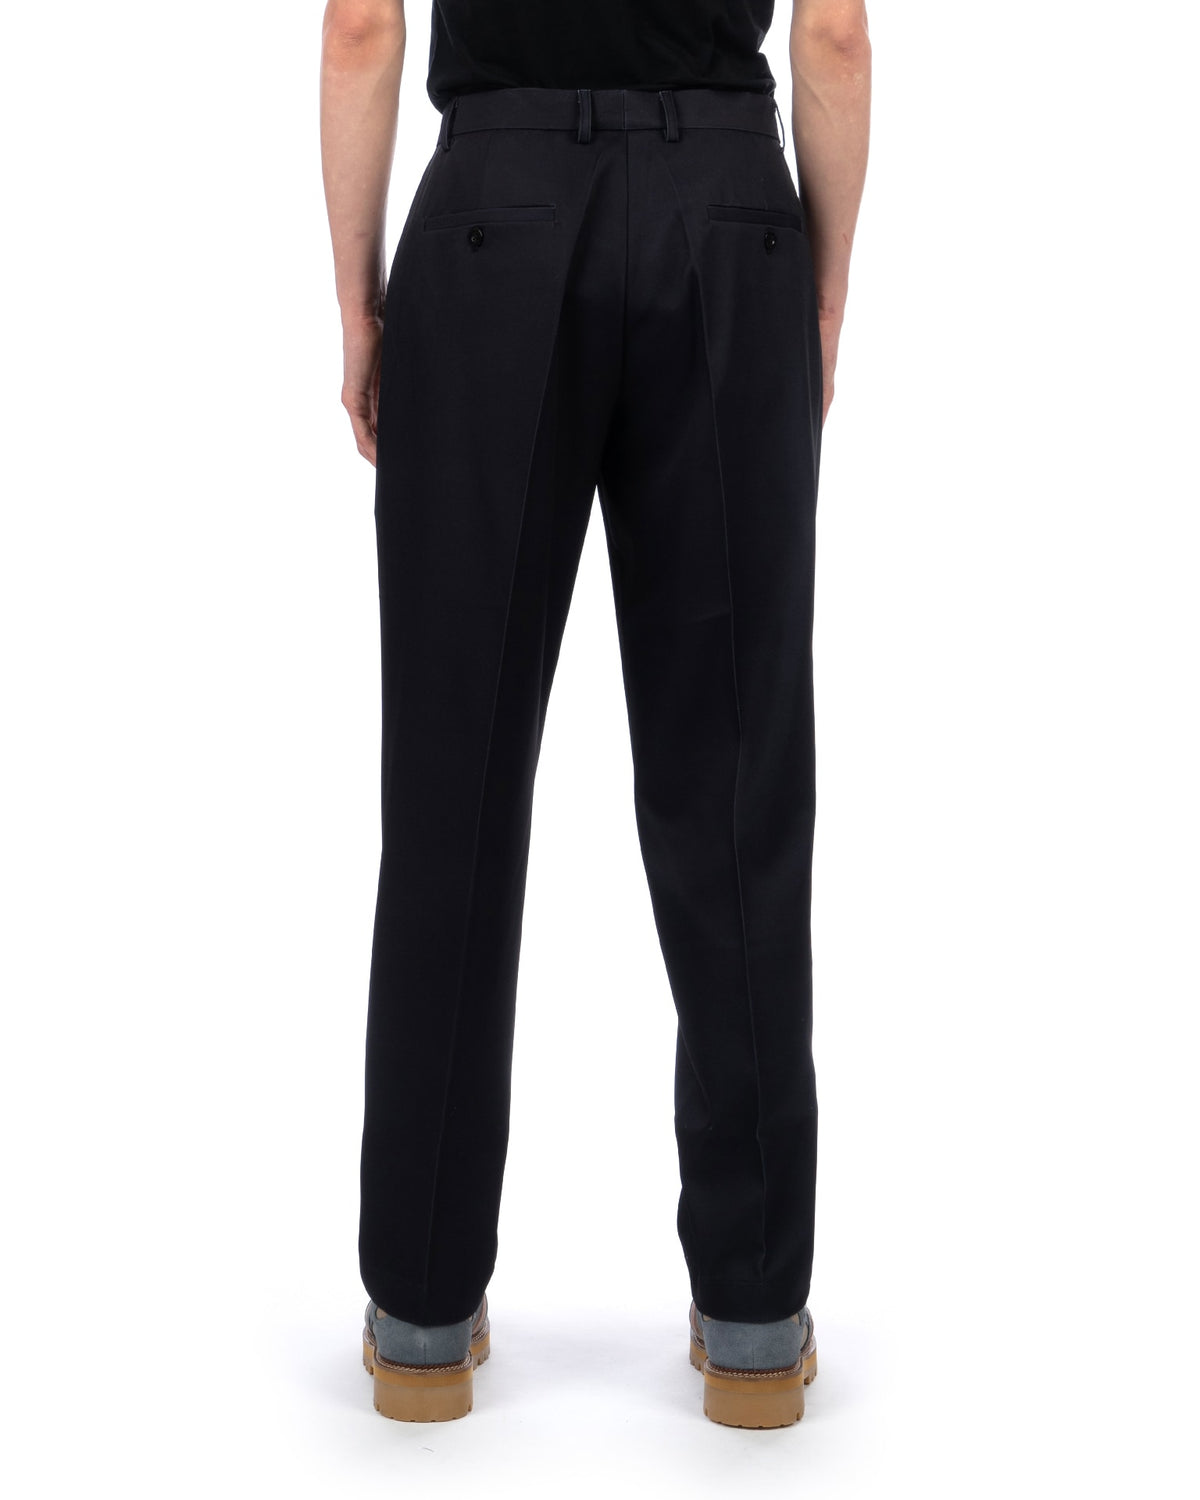 KidSuper | Mannequin Suit Trousers Black - Concrete